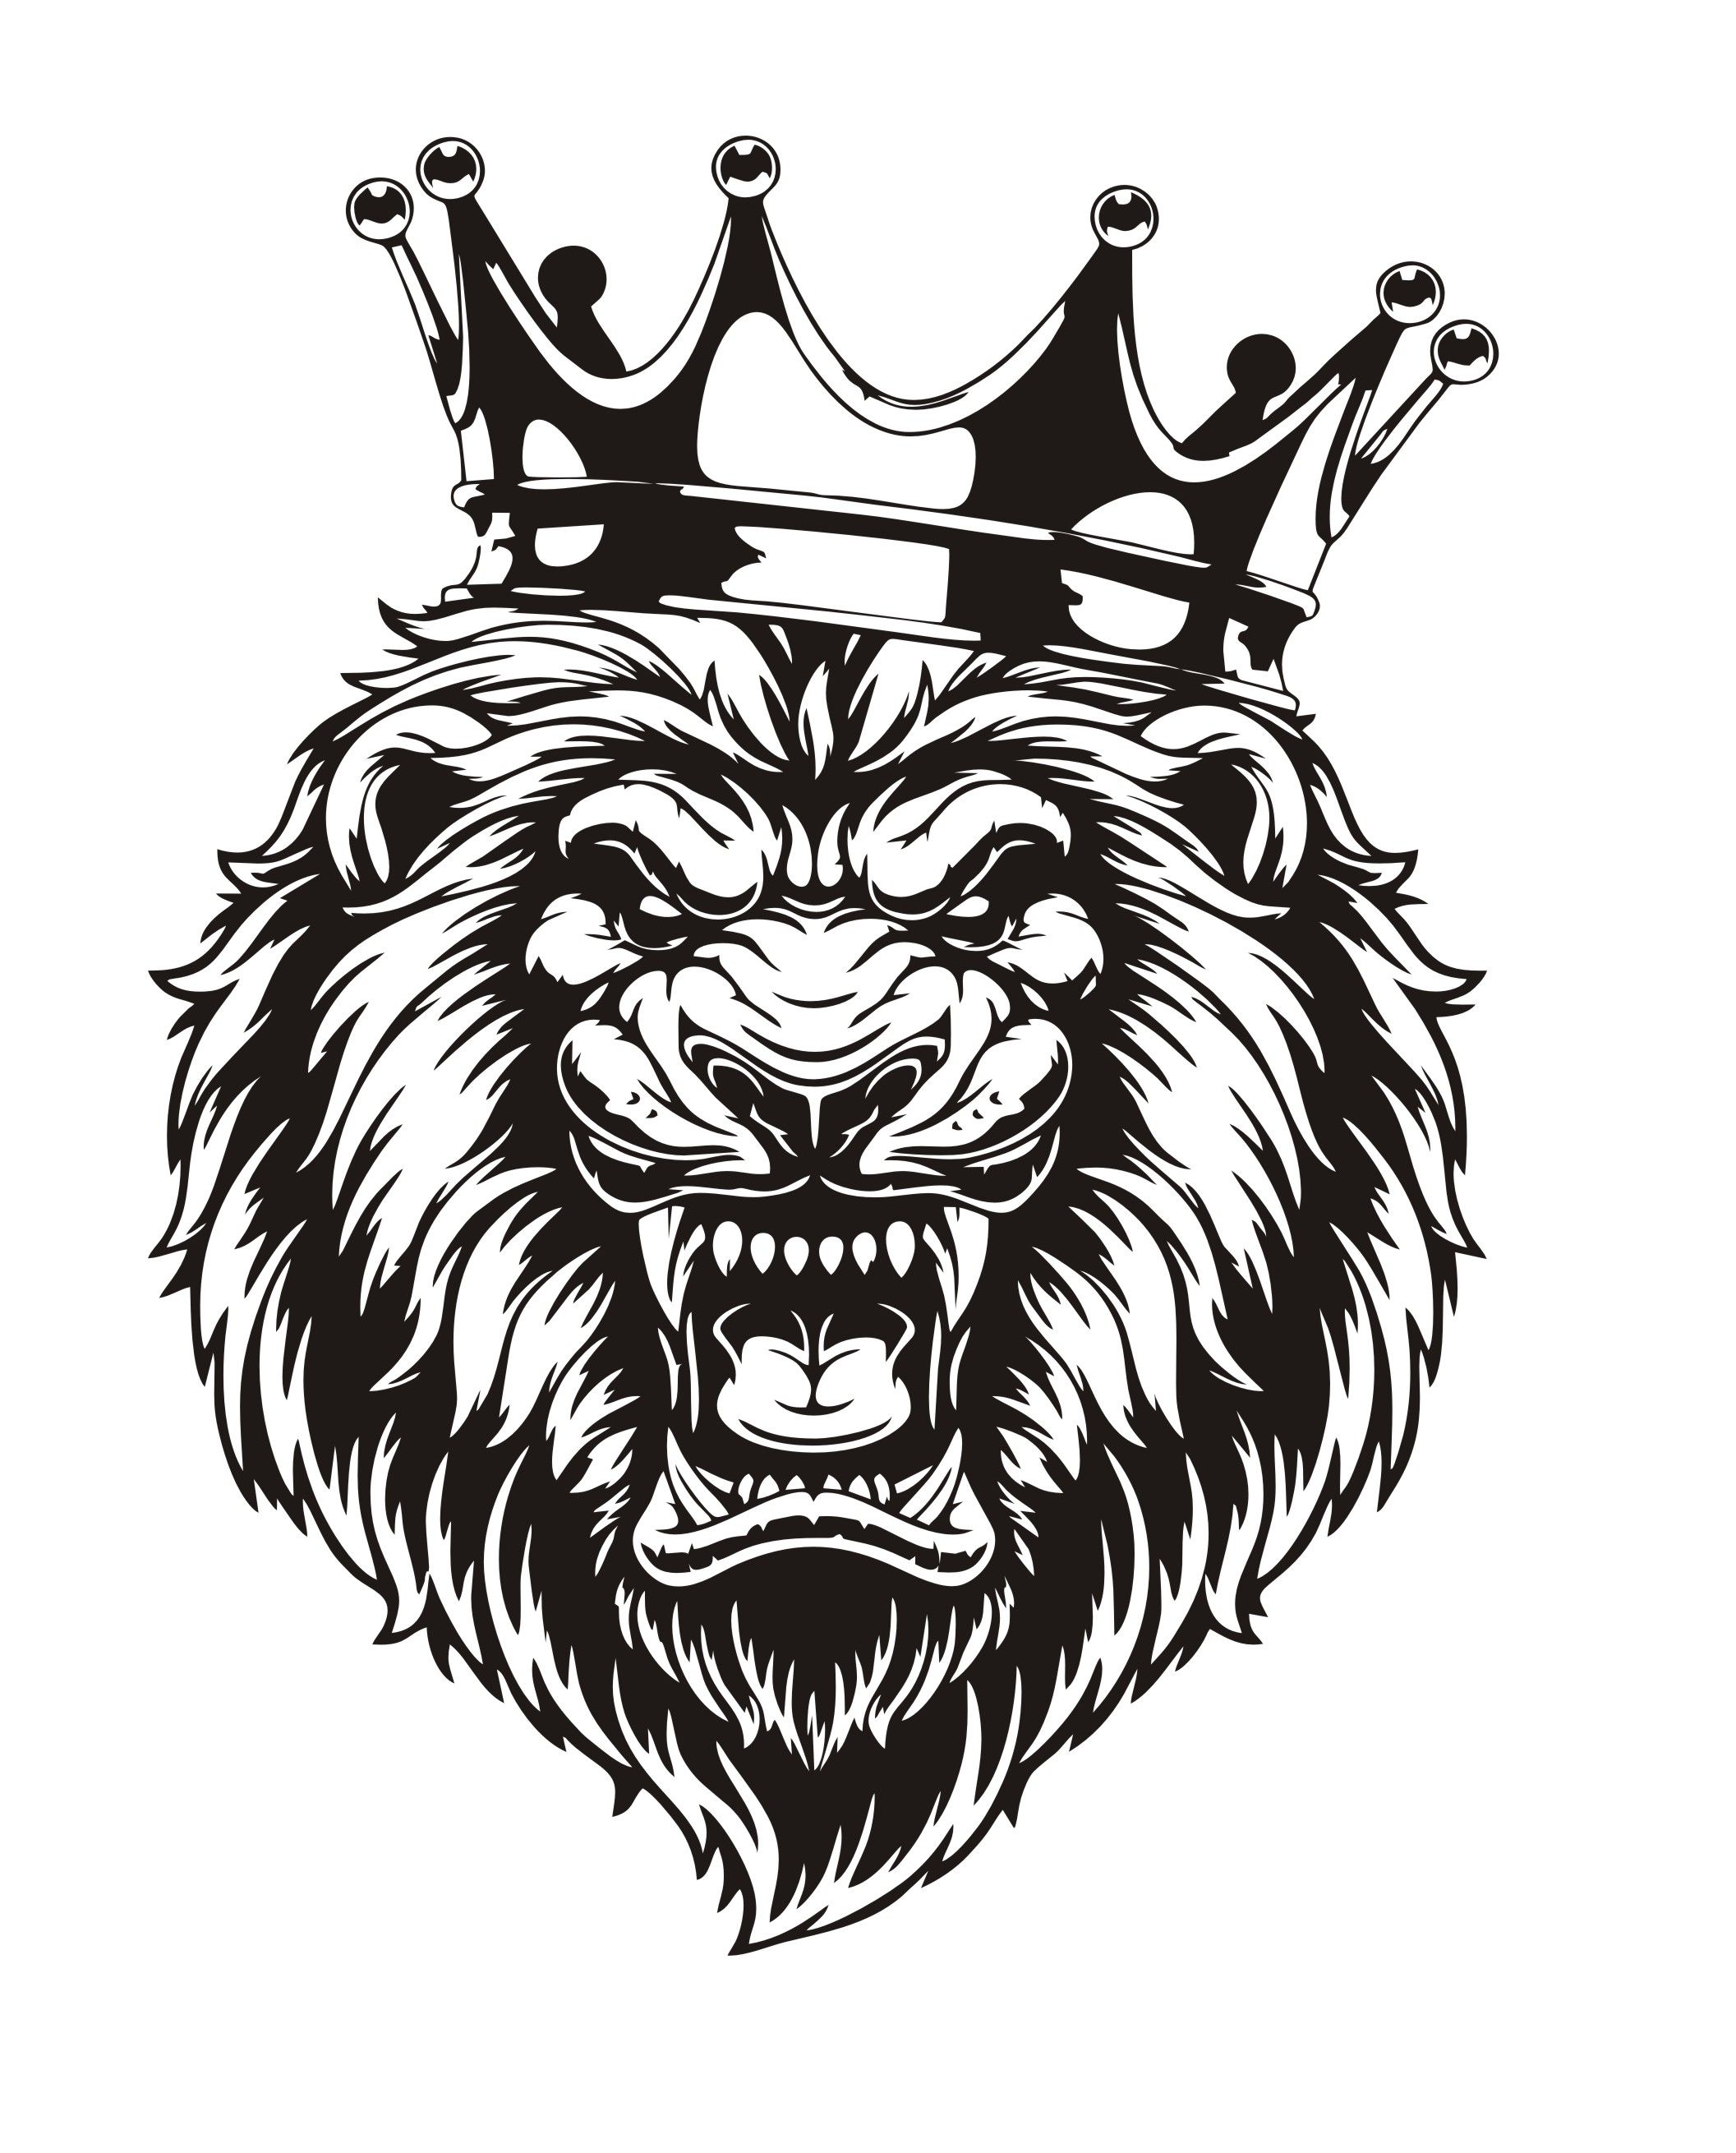 Лев с короной на голове. Наклейка Лев. Лев с короной рисунок. Медведь с короной.